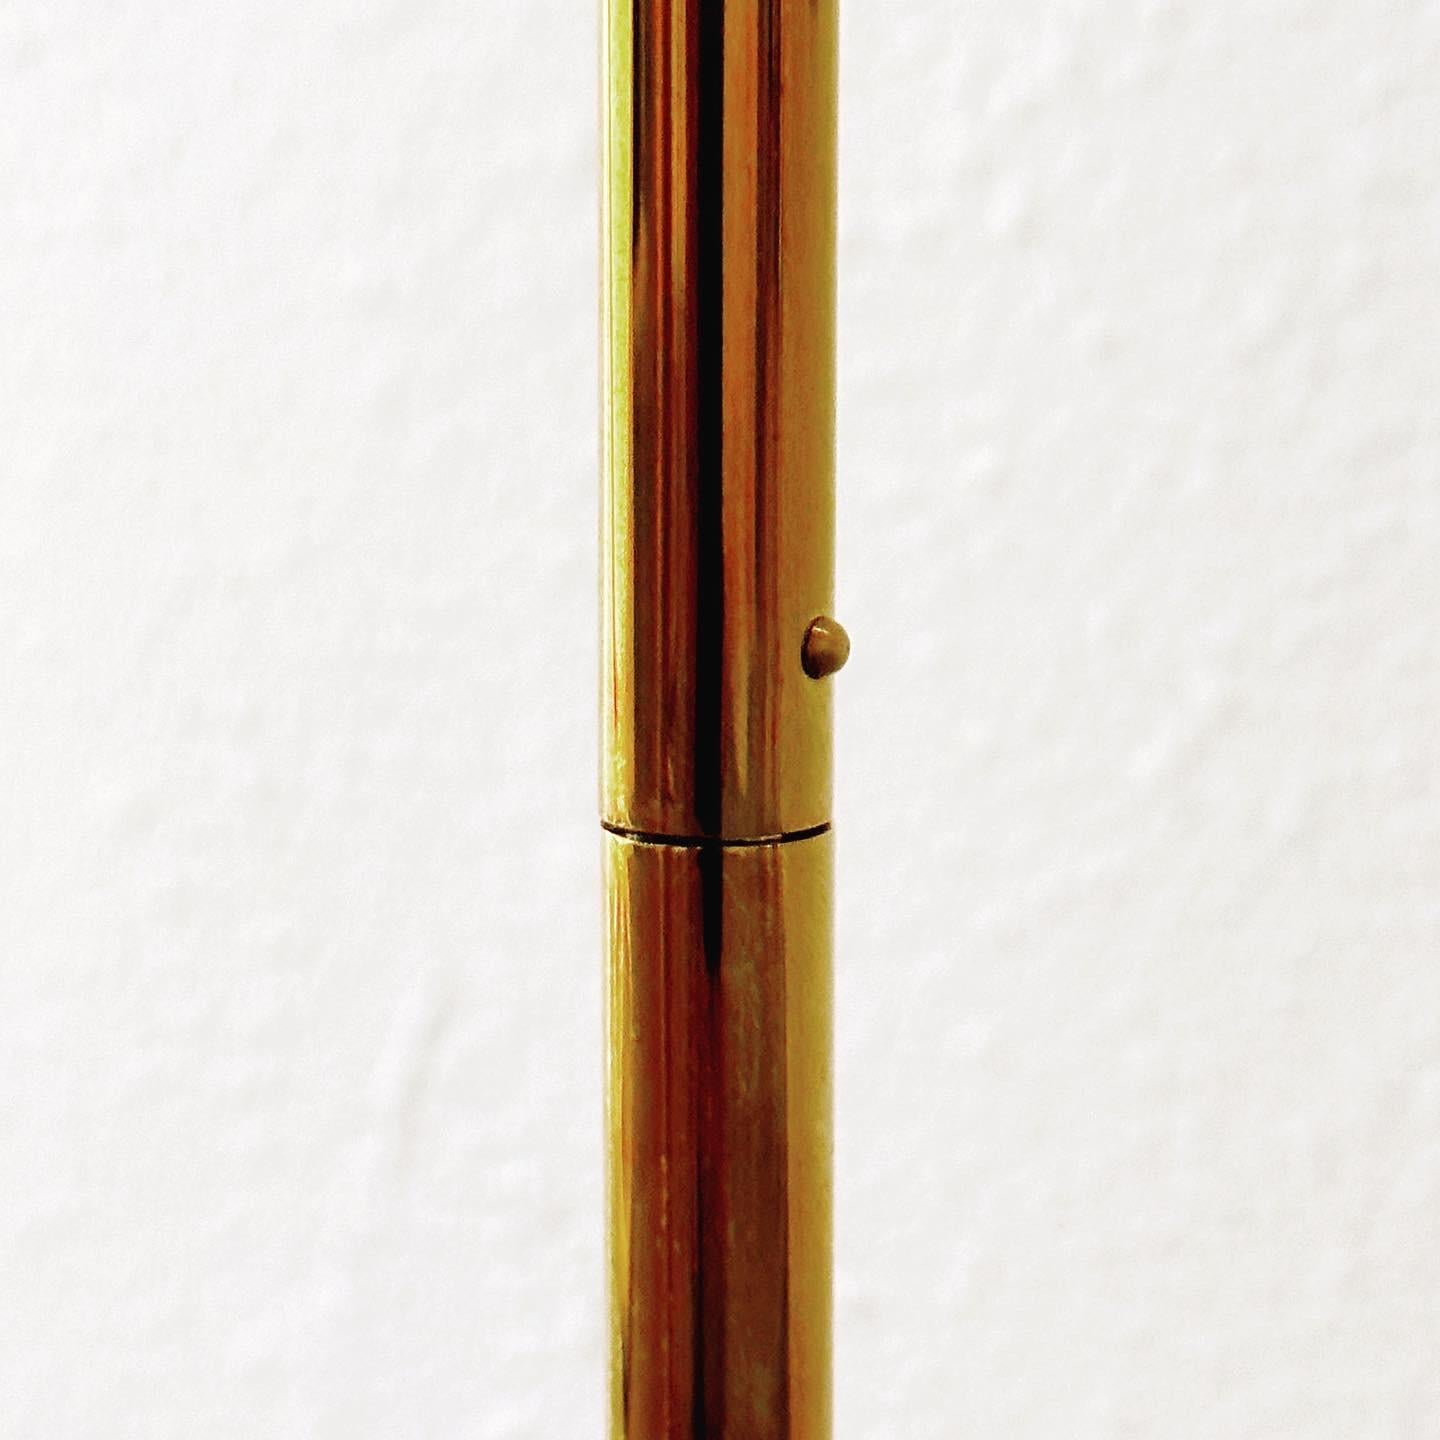 Aluminum Cedric Hartman Pair Signed Adjustable Brass Reading Lamps 1UWV, 1967 Design